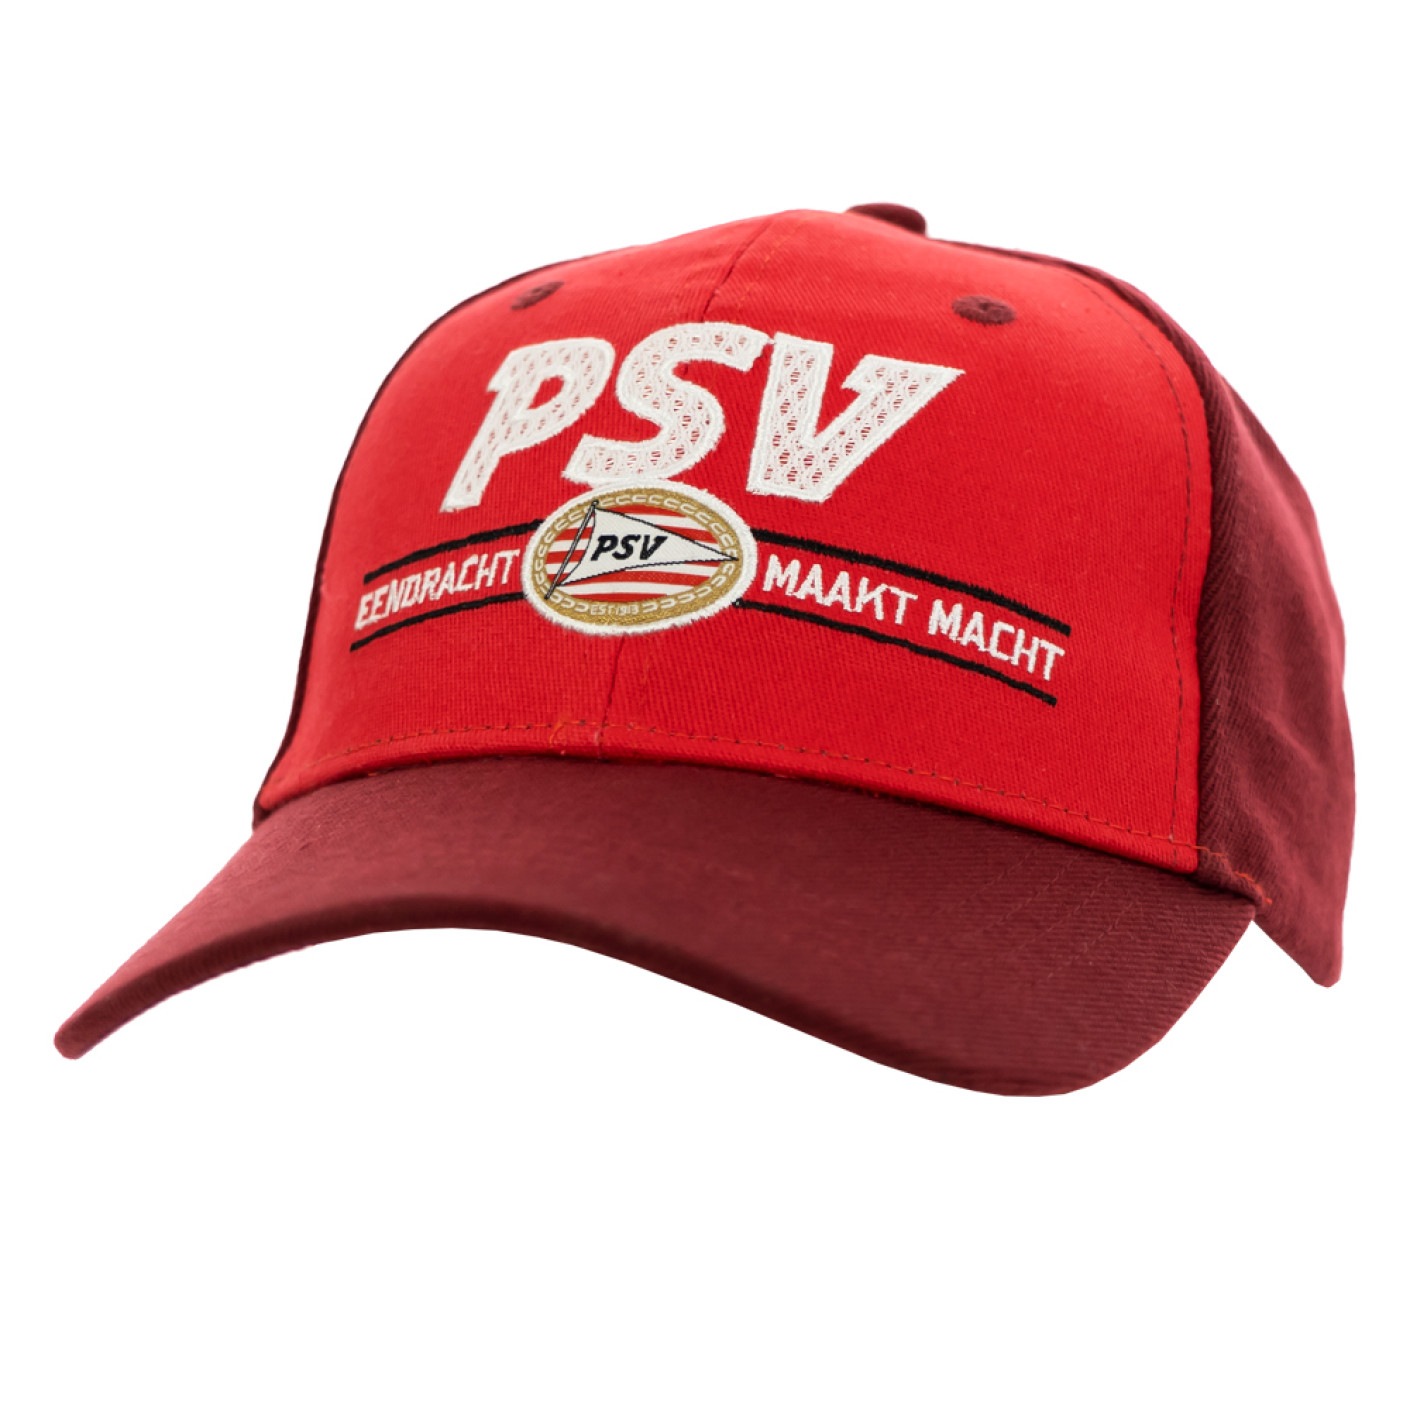 PSV Cap Letters Mesh rood-bordeaux SR